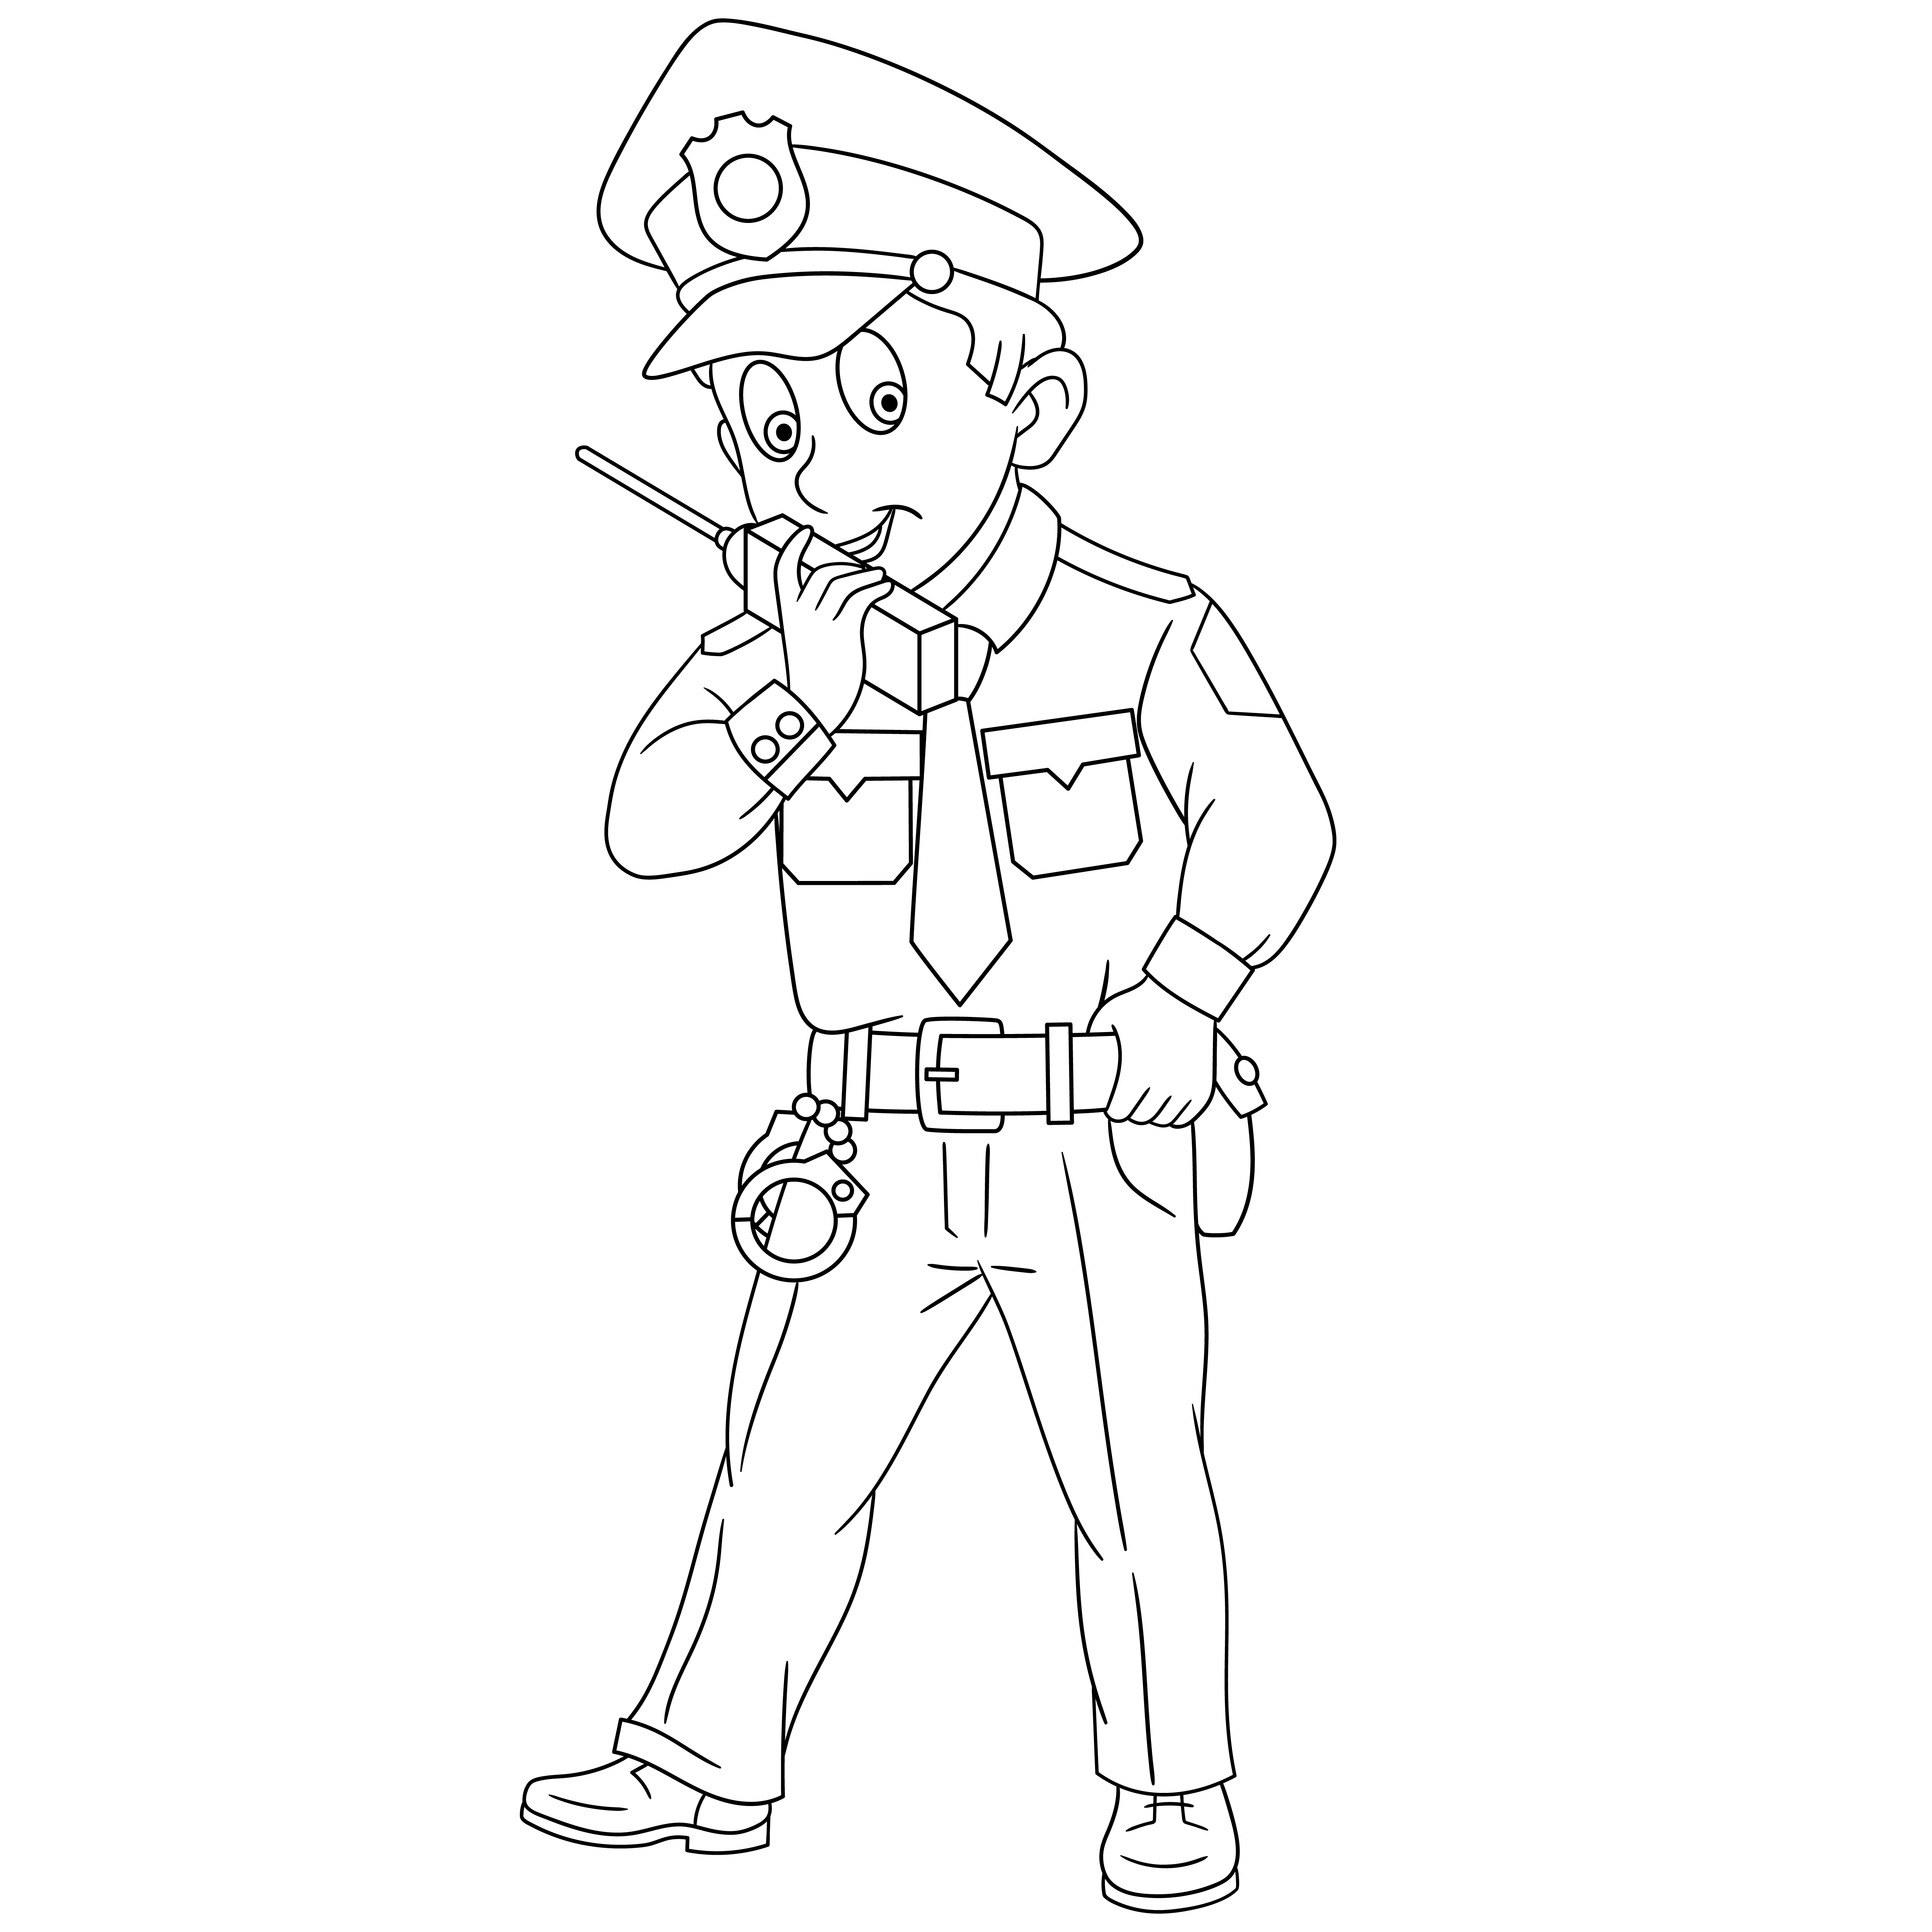 Раскраска полицейский с рацией формата А4 в высоком качестве